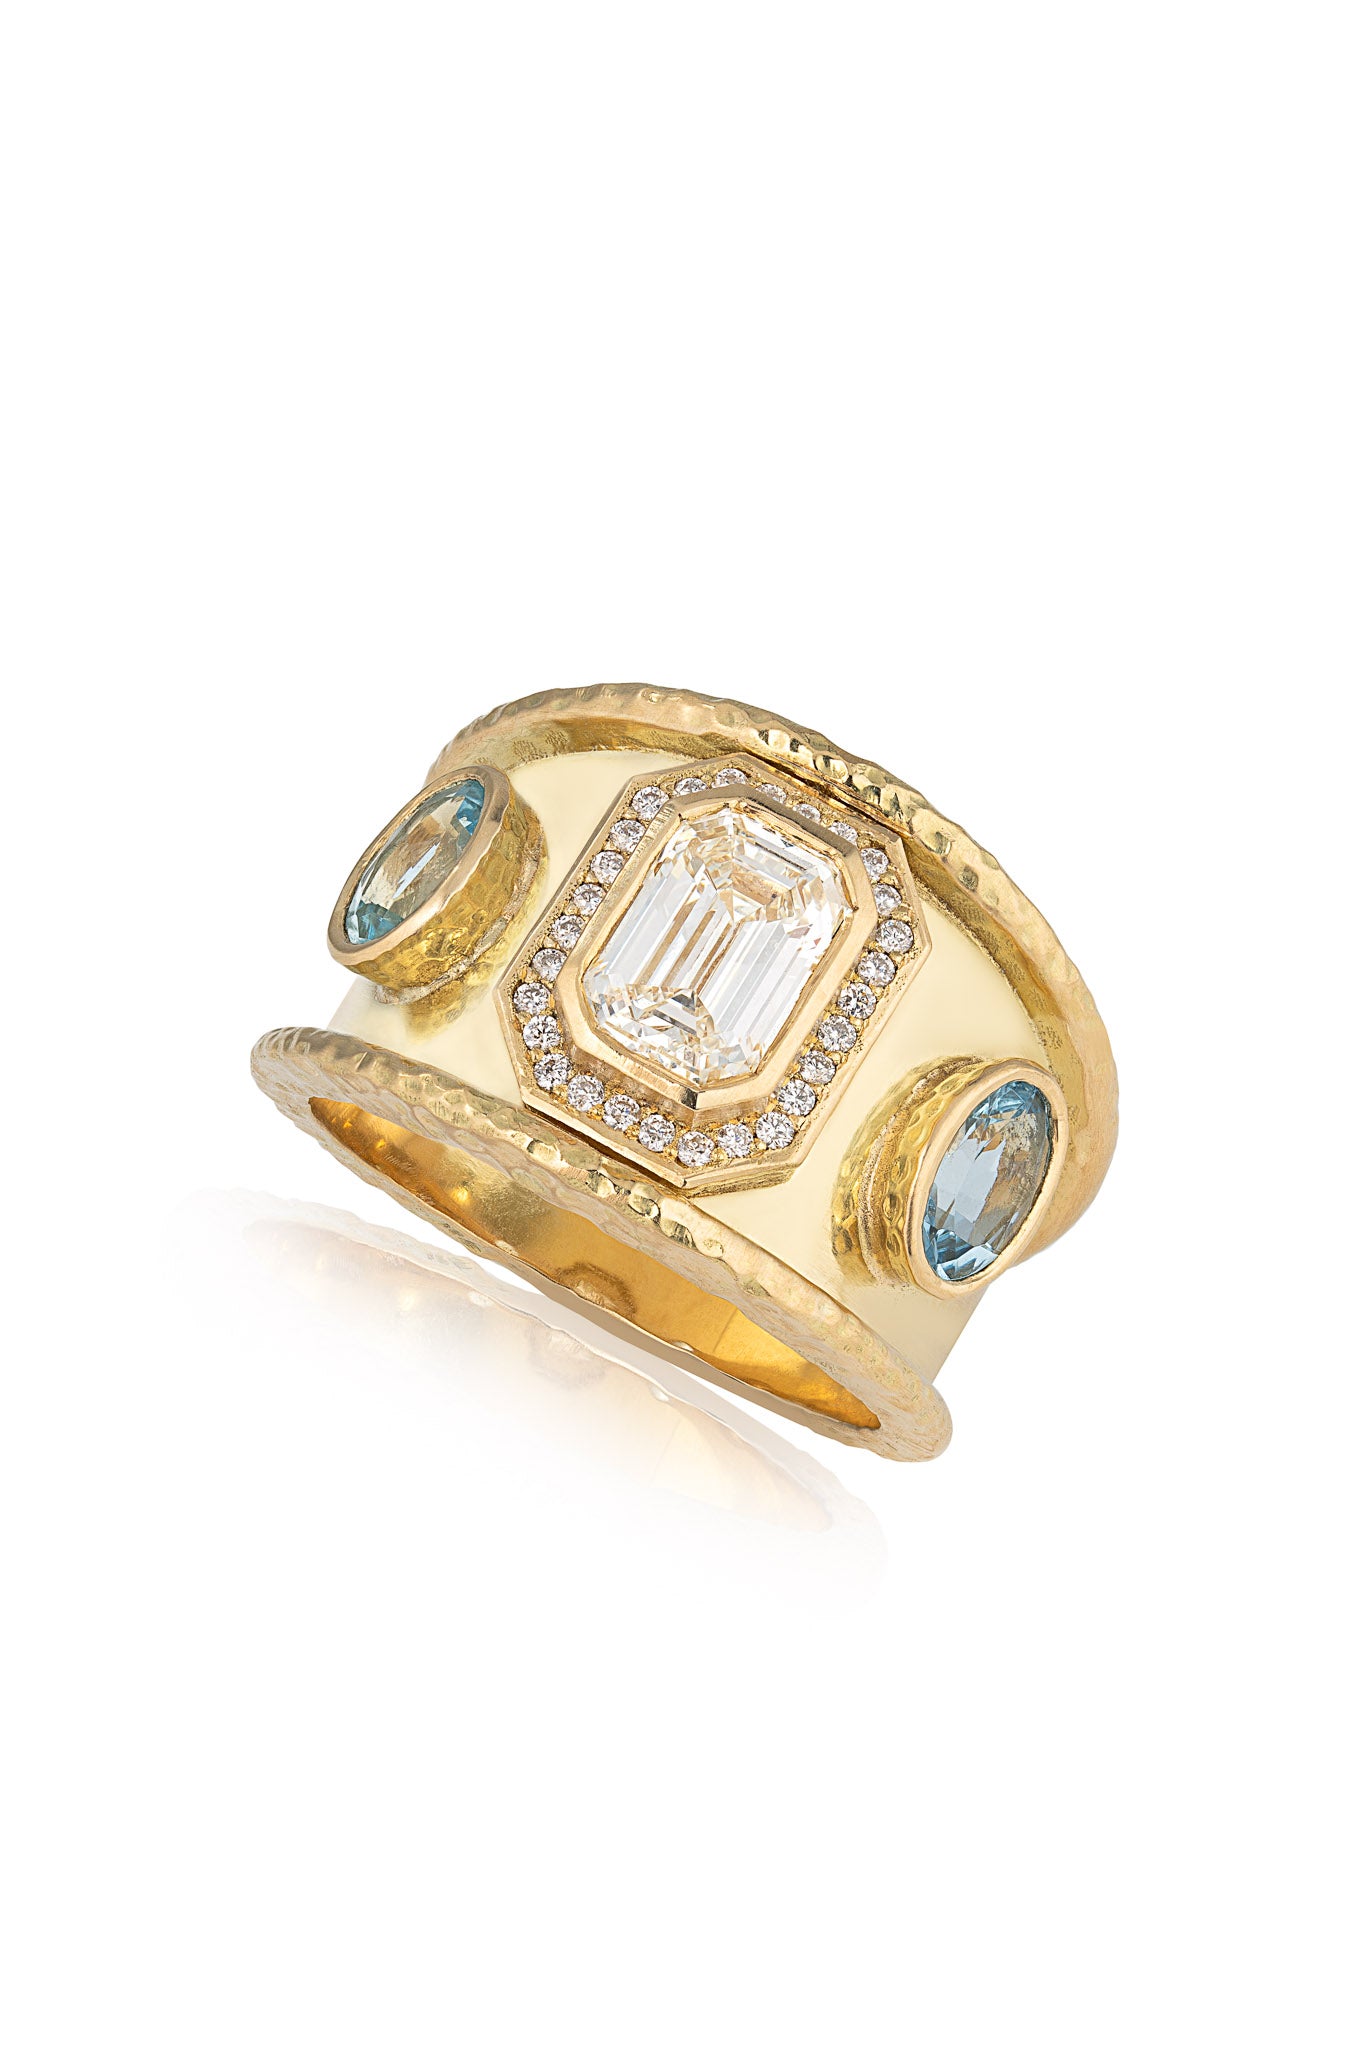 Bespoke 18ct Yellow Gold Diamond & Aquamarine Ring